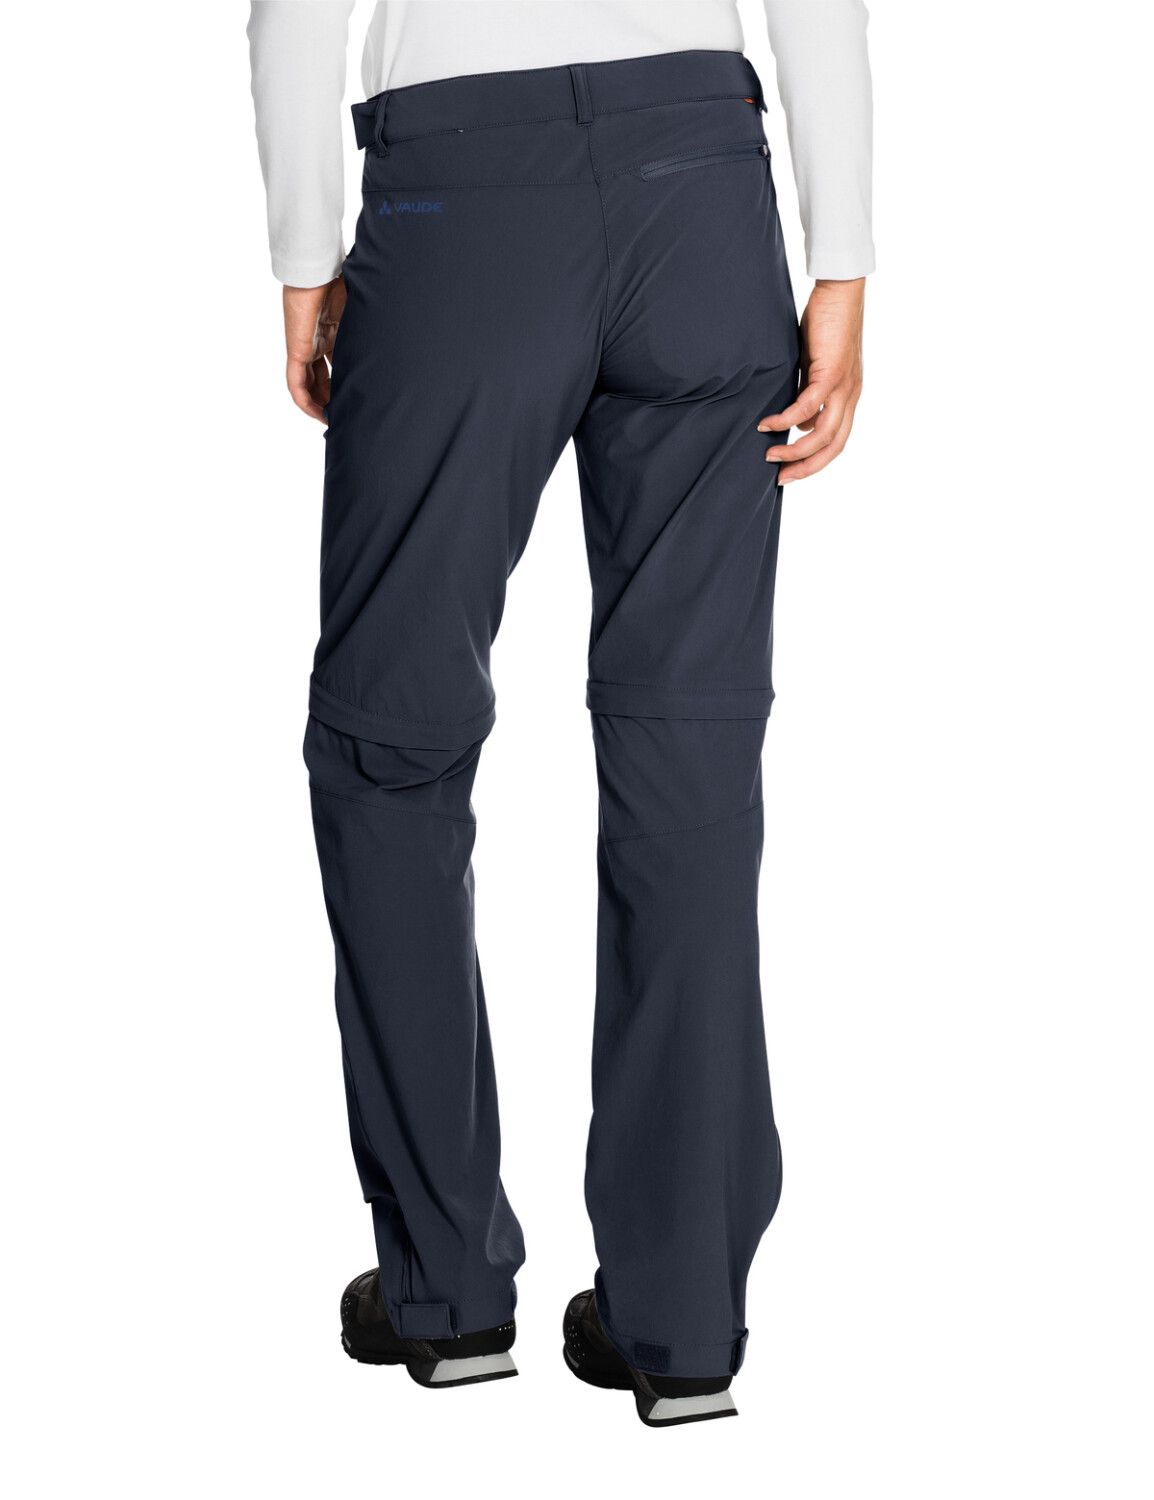 VAUDE Women's Farley Stretch ZO T-Zip Pants (Bild 44)